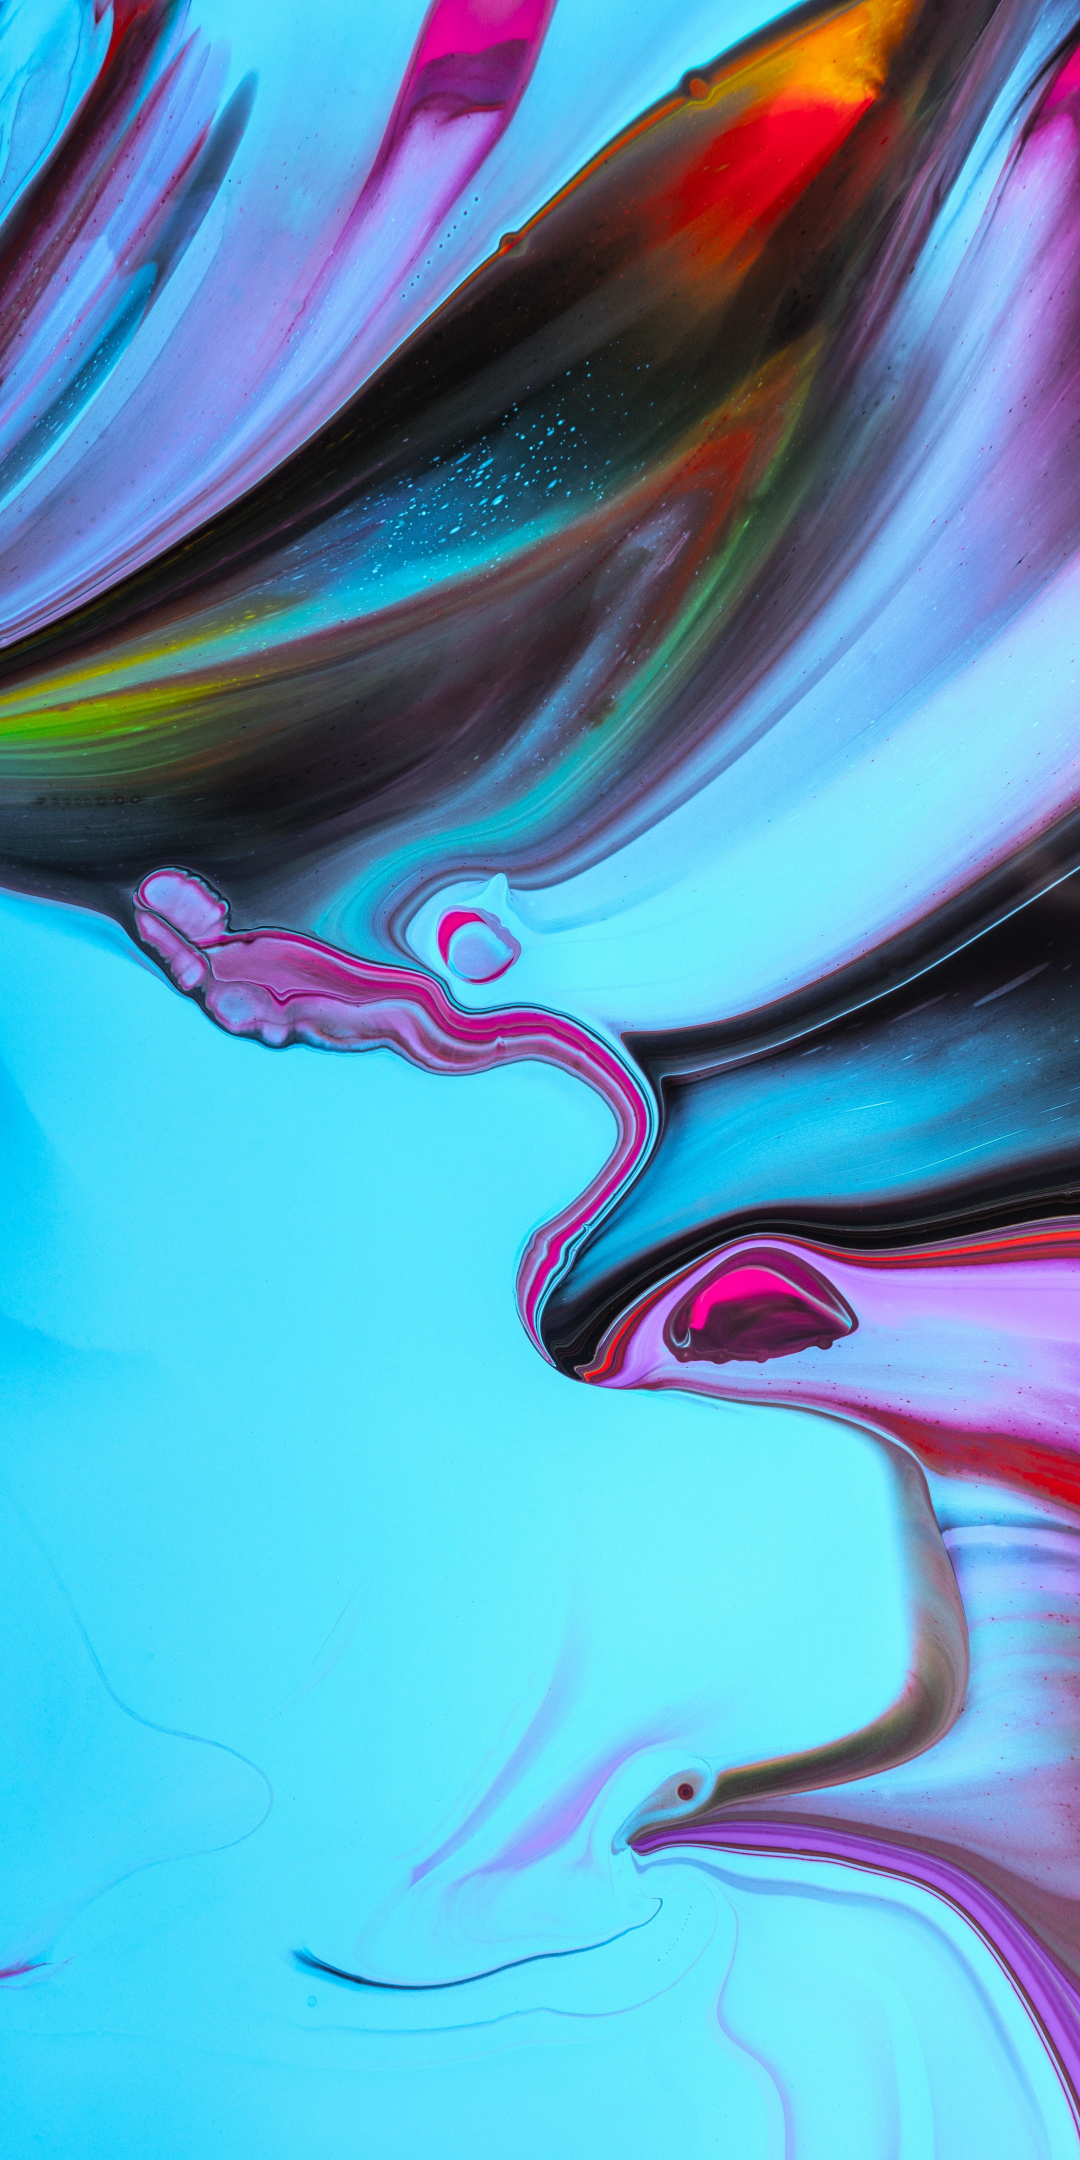 Paint, mixing liquid art, colorful, 1080x2160 wallpaper